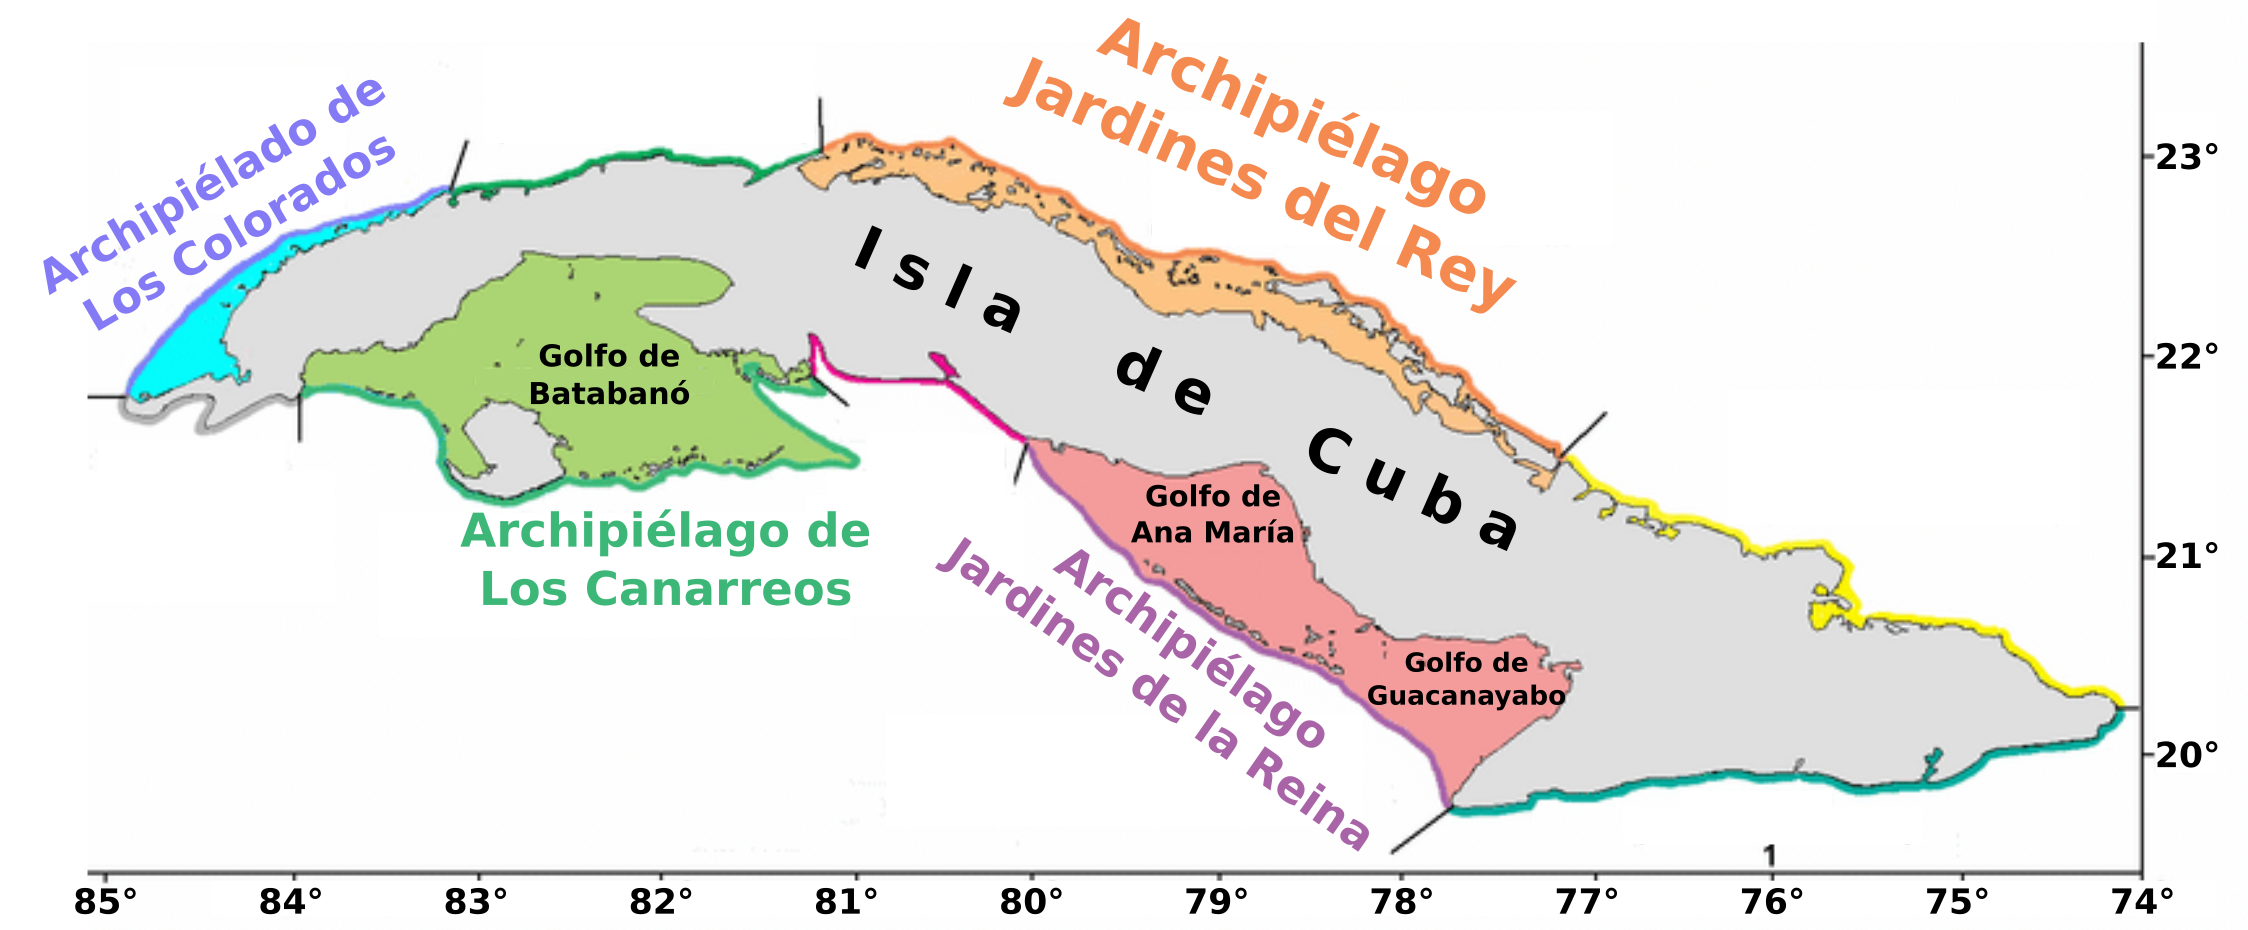 Archivo:La Isla de Cuba y sus archipiélagos adyacentes.png